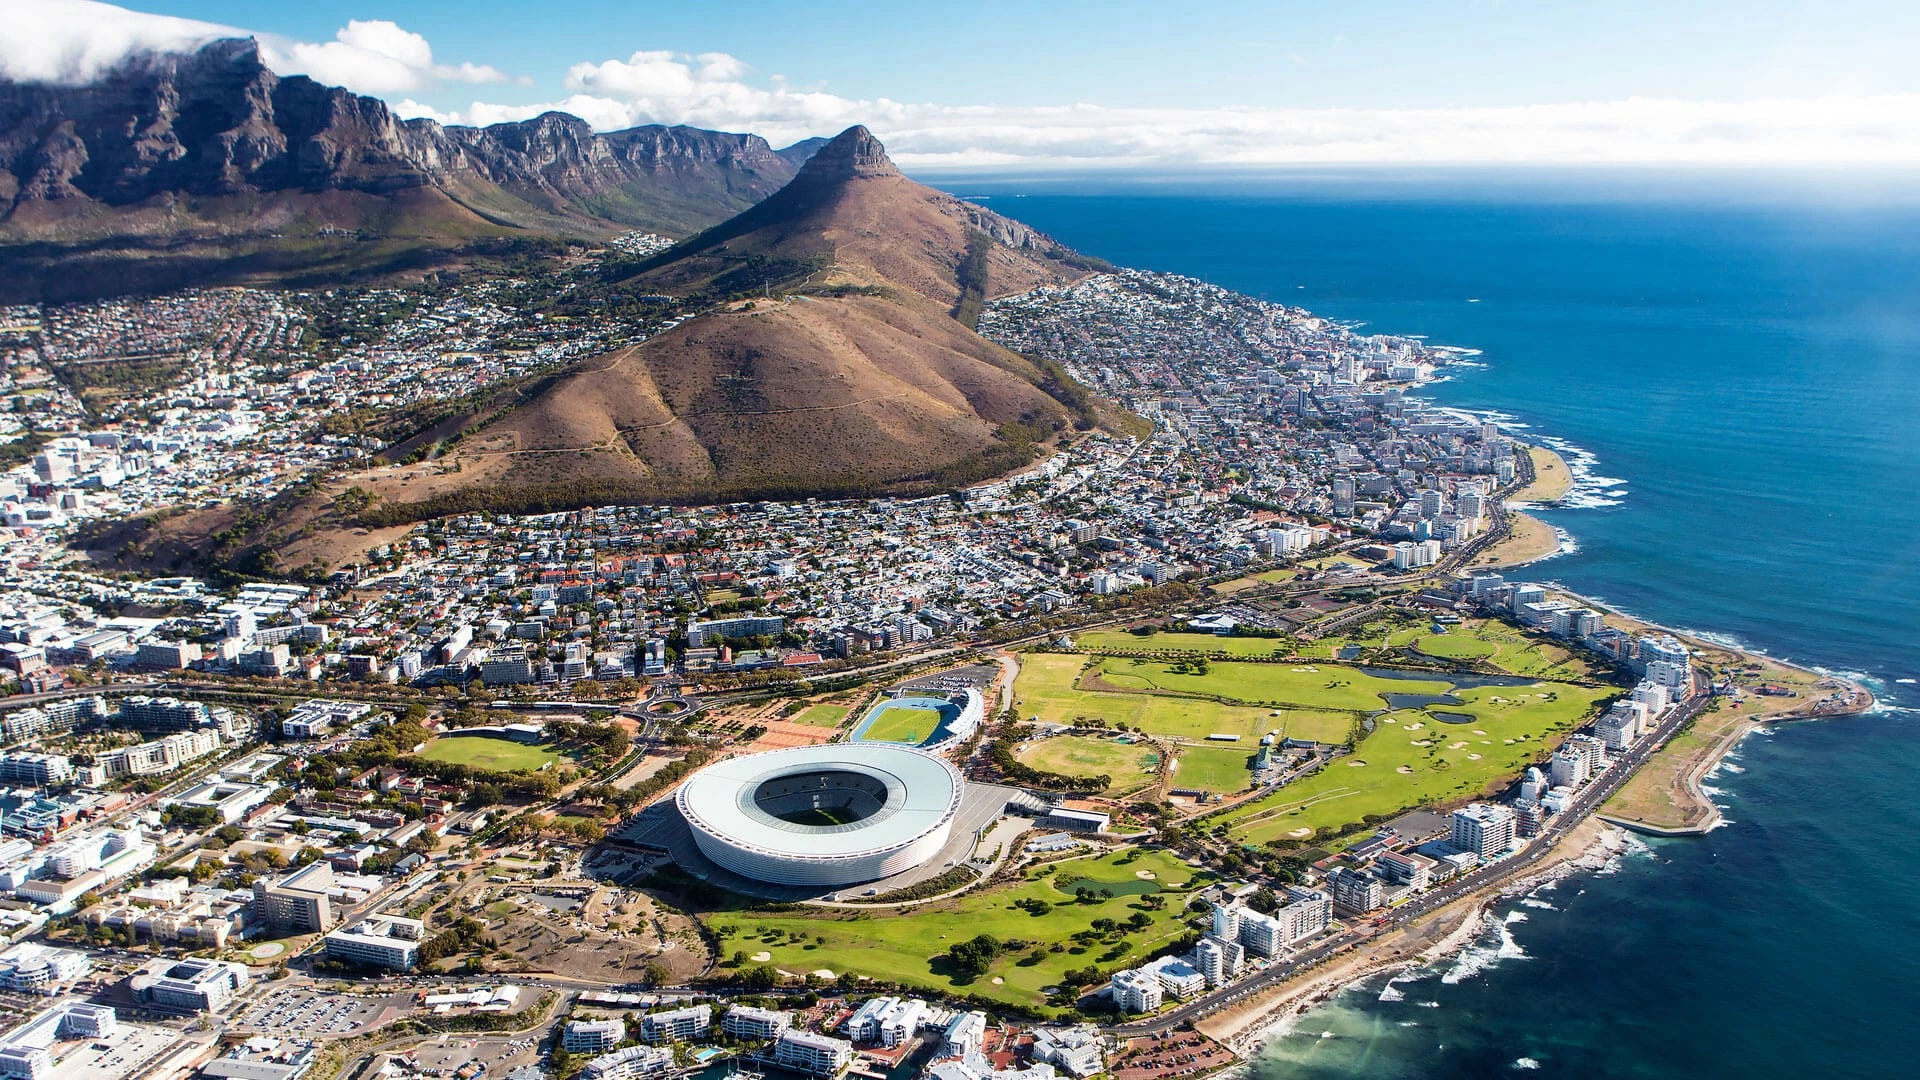 5. Cape Town (Nam Phi): Thành phố Cape Town sôi động và đa văn hóa này nổi bật bởi cảnh đẹp thiên nhiên, di tích lịch sử và nhiều điểm tham quan miễn phí cho du khách. Bạn đừng bỏ qua chuyến đi bộ đường dài trên núi Bàn hay ghé chiêm ngưỡng các tòa nhà cầu vồng của Bo-Kaap, bơi lội và lướt sóng tại loạt bãi biển đẹp, hoang sơ. Ảnh: andBeyond.